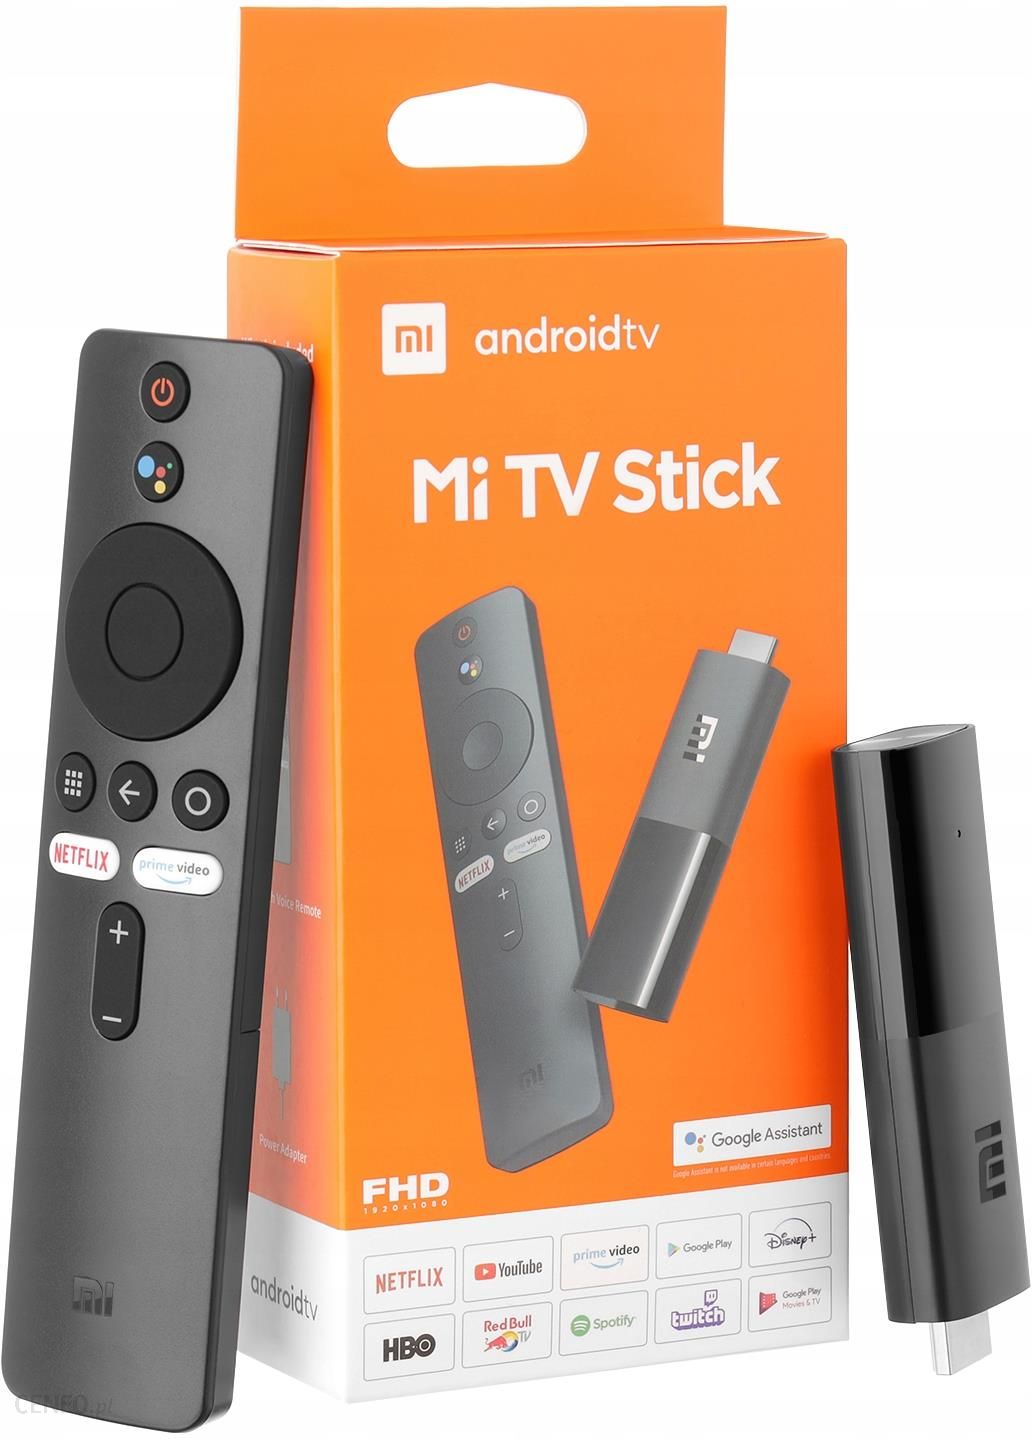 XIAOMI MI TV Stick MDZ-24-AA Odtwarzacz multimedialny Full HD